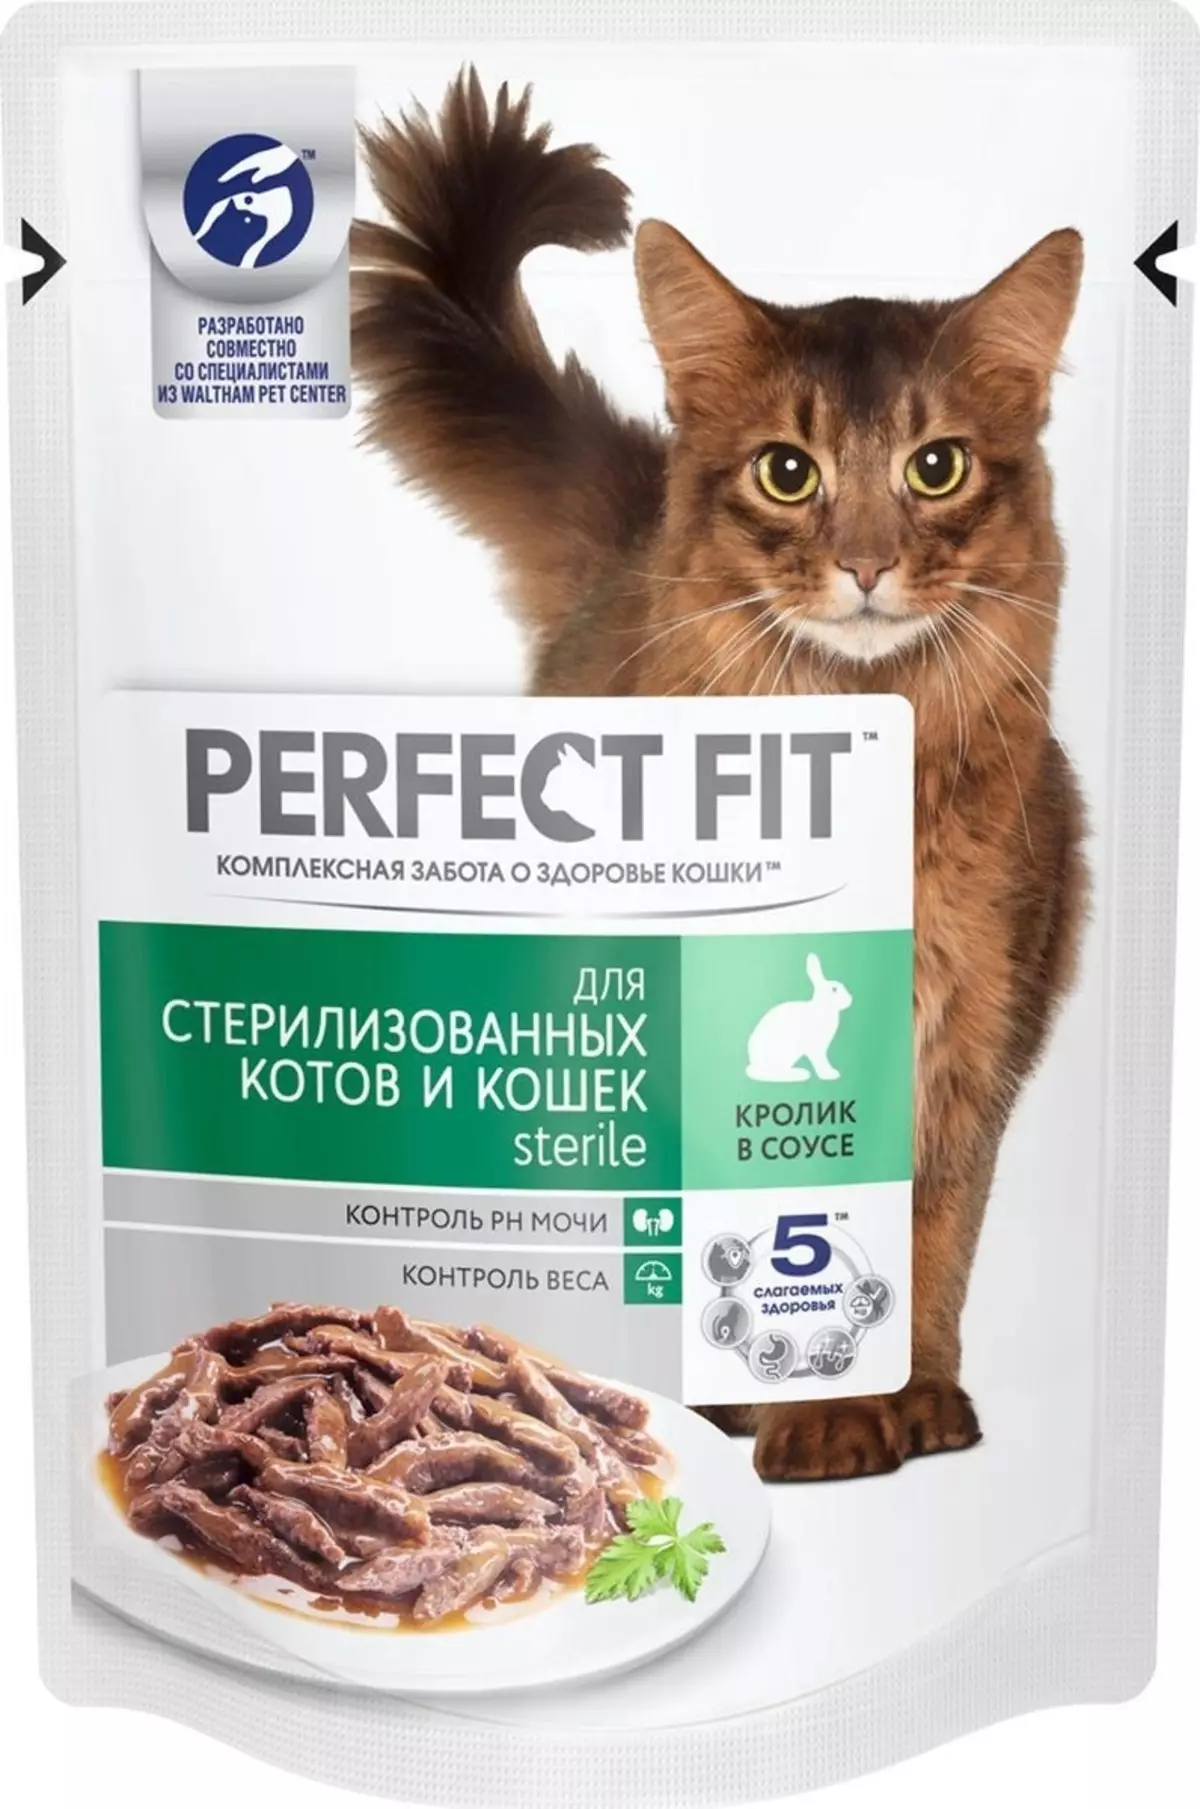 Mokré mačky pre dokonalé fit: tekuté pavúky a ich zloženie, sterilná strava pre sterilizované osoby a iné. Recenzie 11352_13